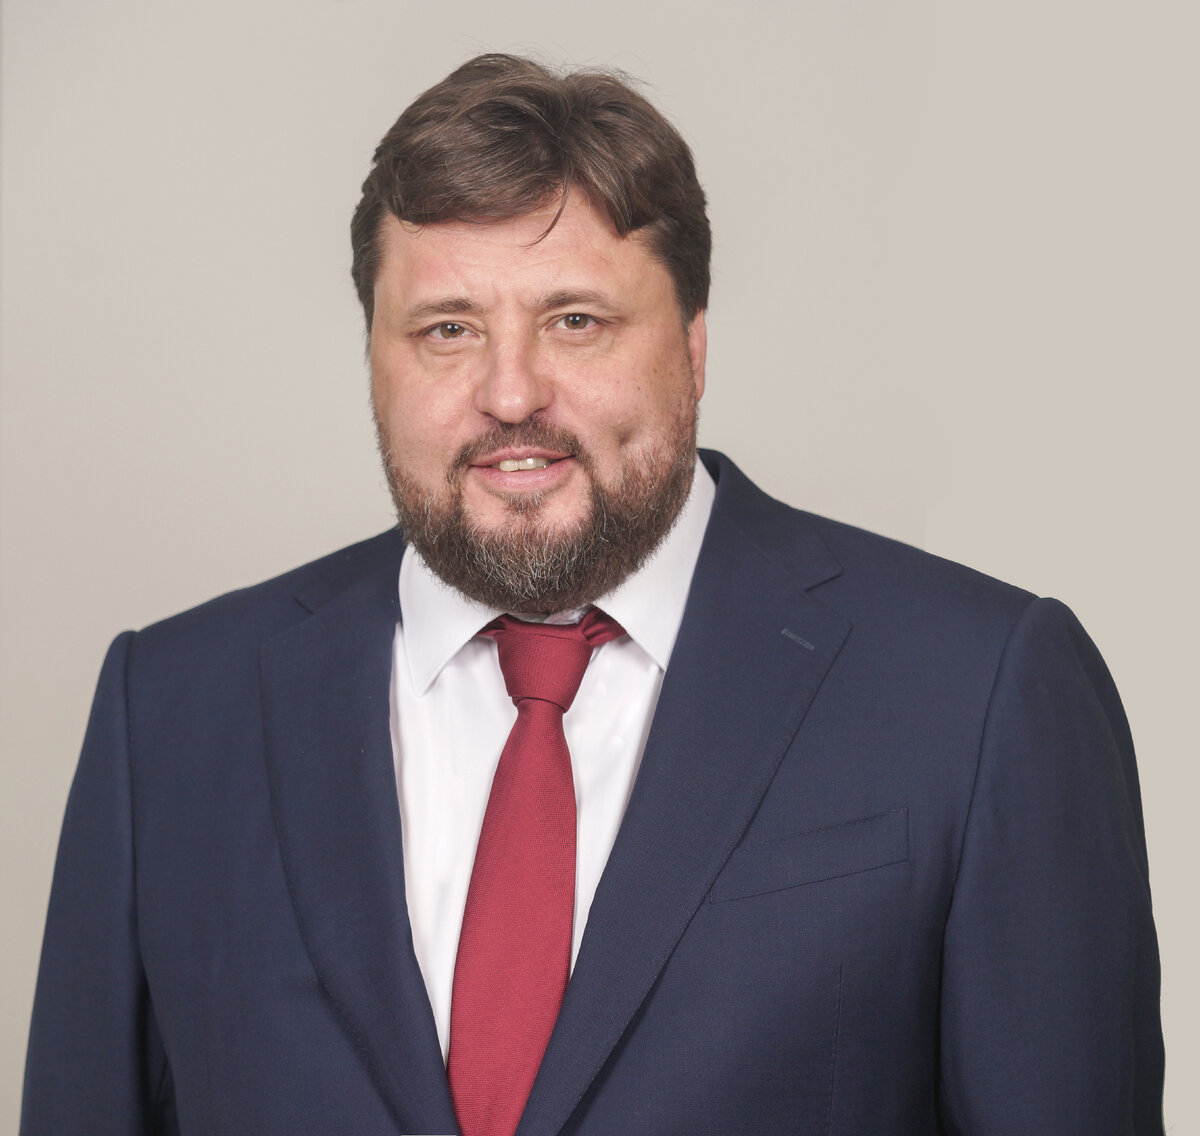 Павел Николаевич Косов, генеральный директор, член совета директоров АО «Росагролизинг».